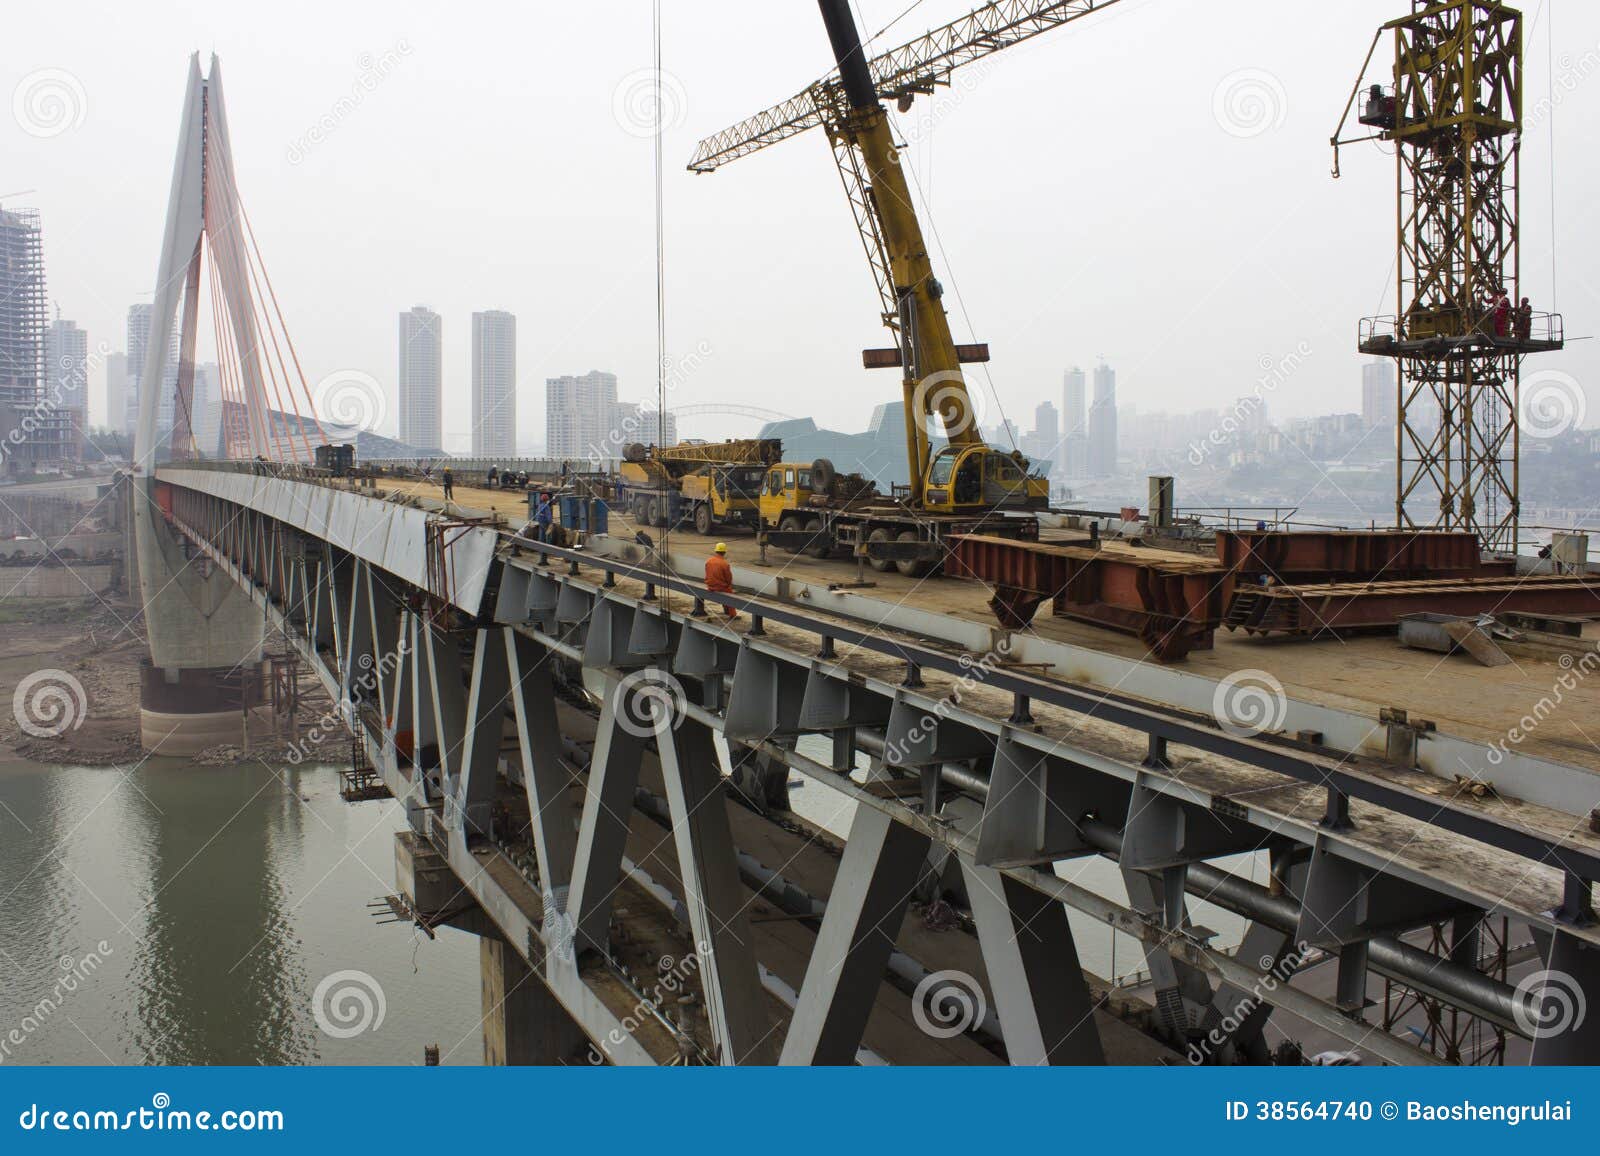 Costruzione di ponte della città di Chongqing di cinese.
Foto presa il 6 marzo 2014